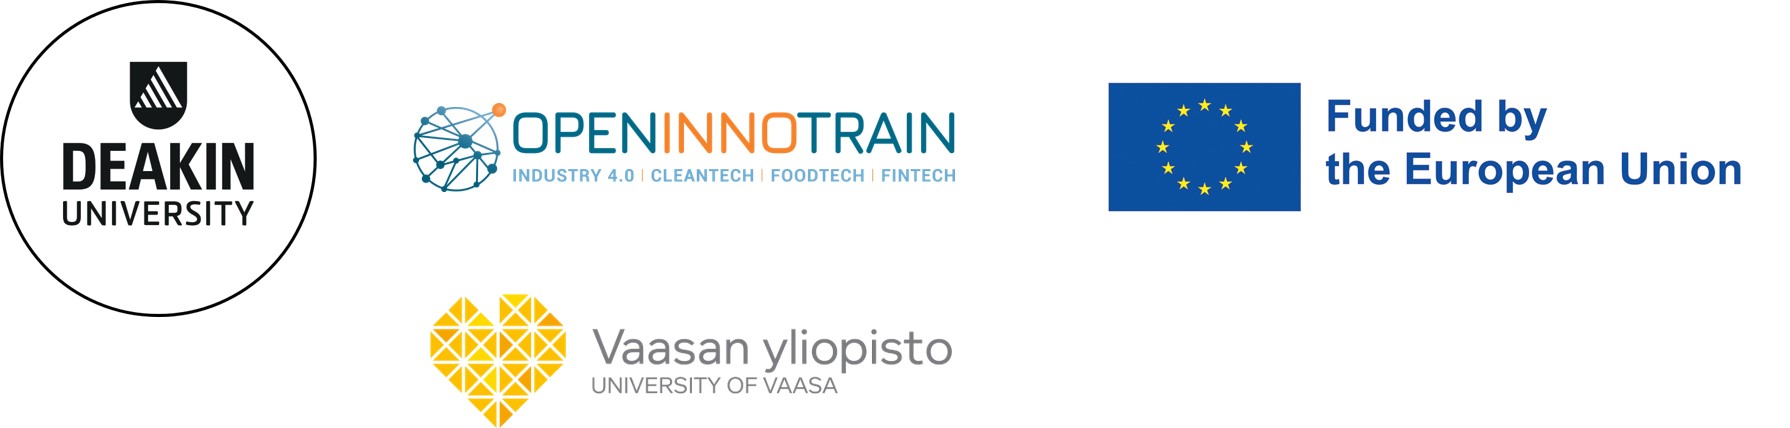 Deakin University logo, Open Innotrain logo, University of Vaasa and EU logo